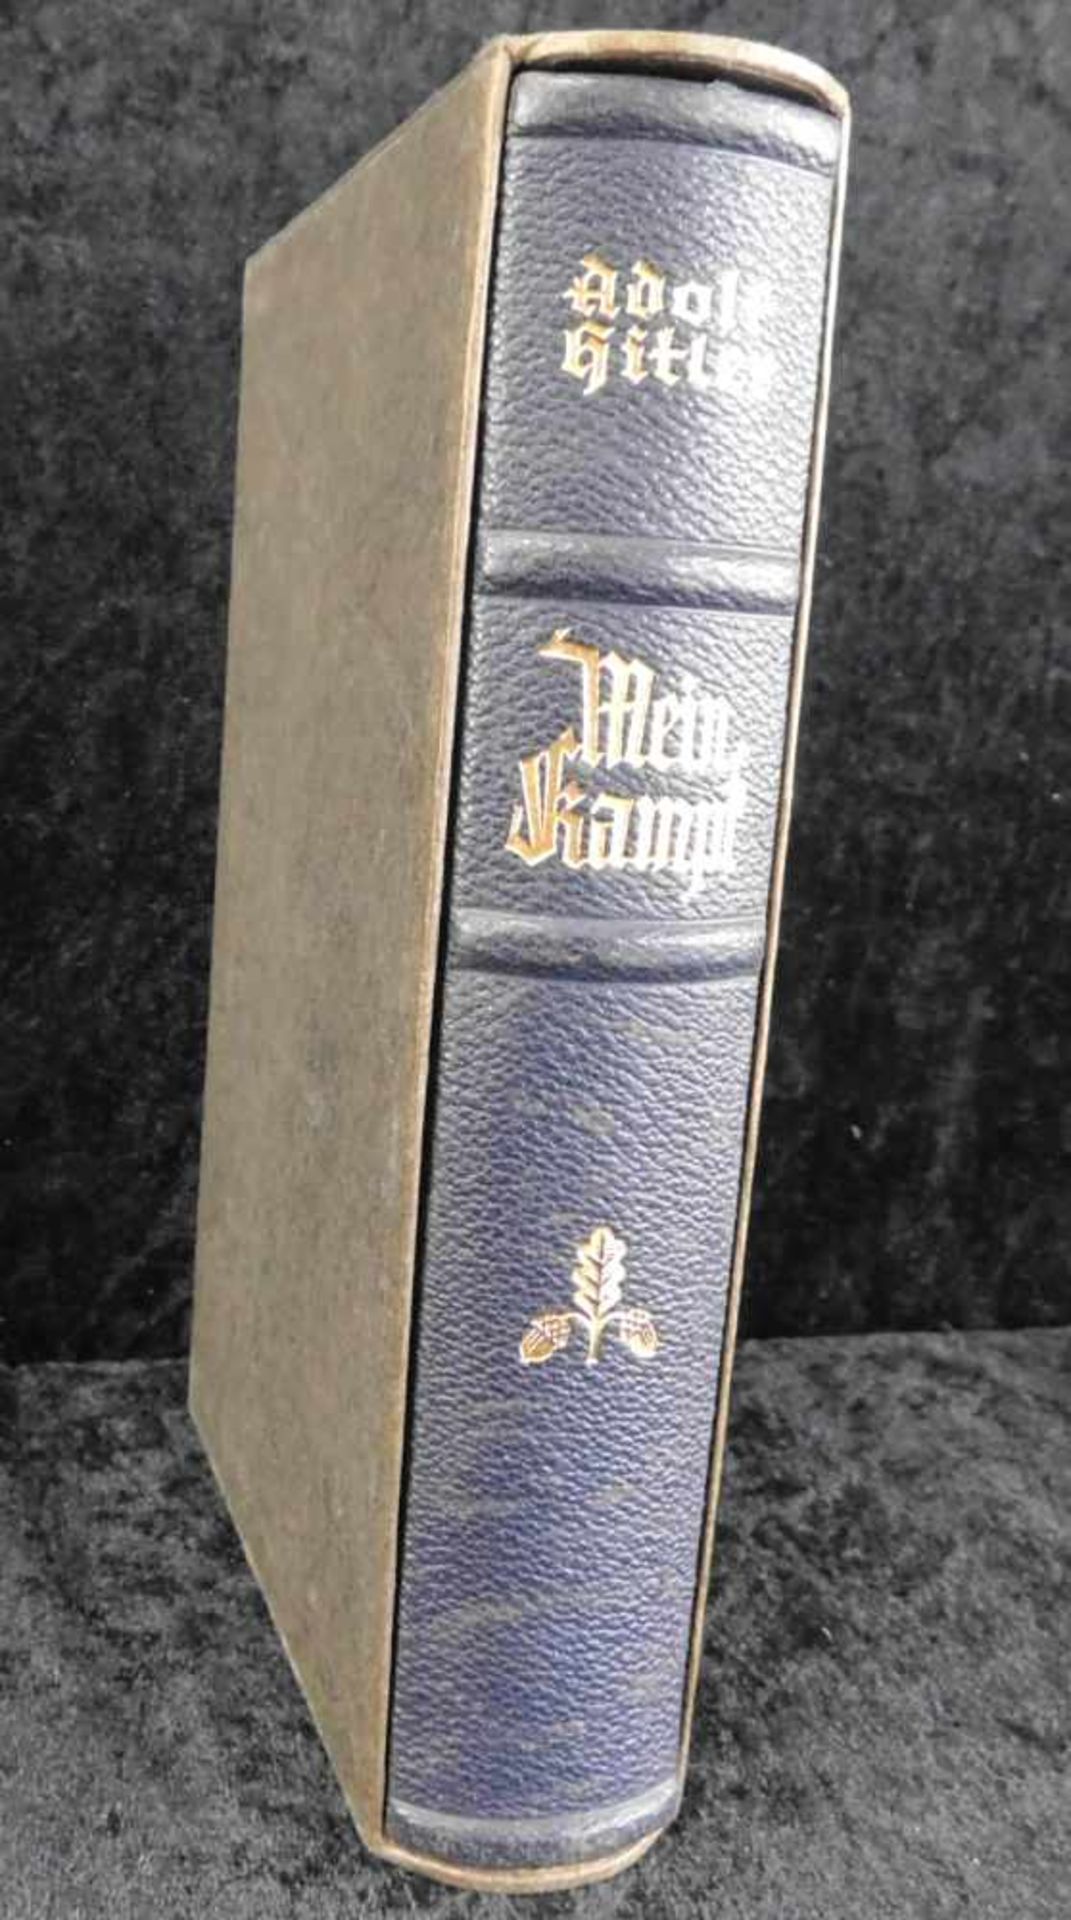 Mein Kampf, Adolf Hitler, Hochzeitsausgabe, 1938, Lederbuchrücken schwarz m. goldfarb. Beschriftung,